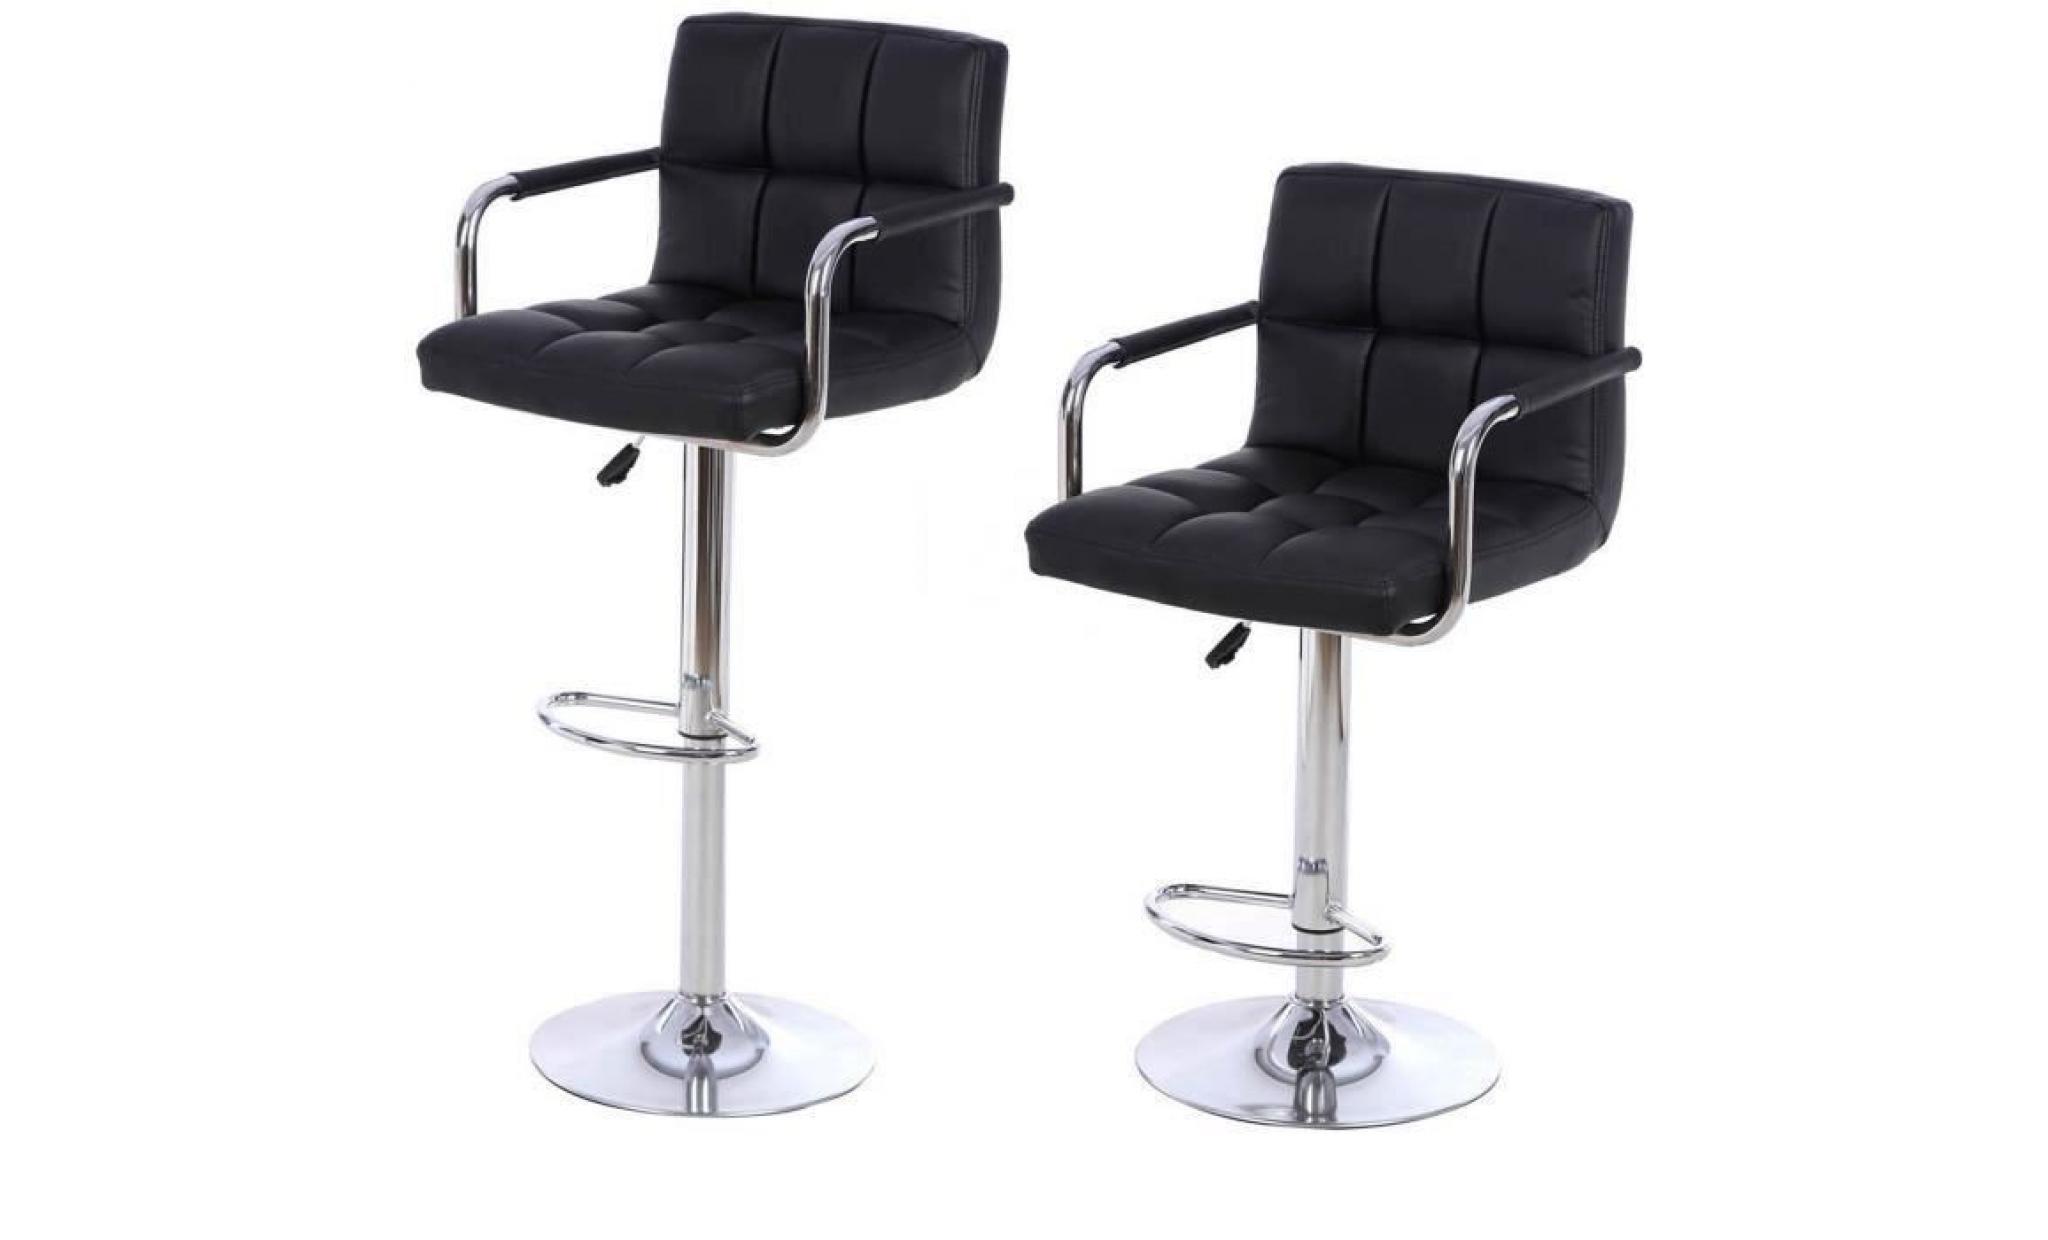 tabouret noir   lot de 2   tabouret de bar pivotant   réglable en hauteur   chaise en simili cuir pas cher